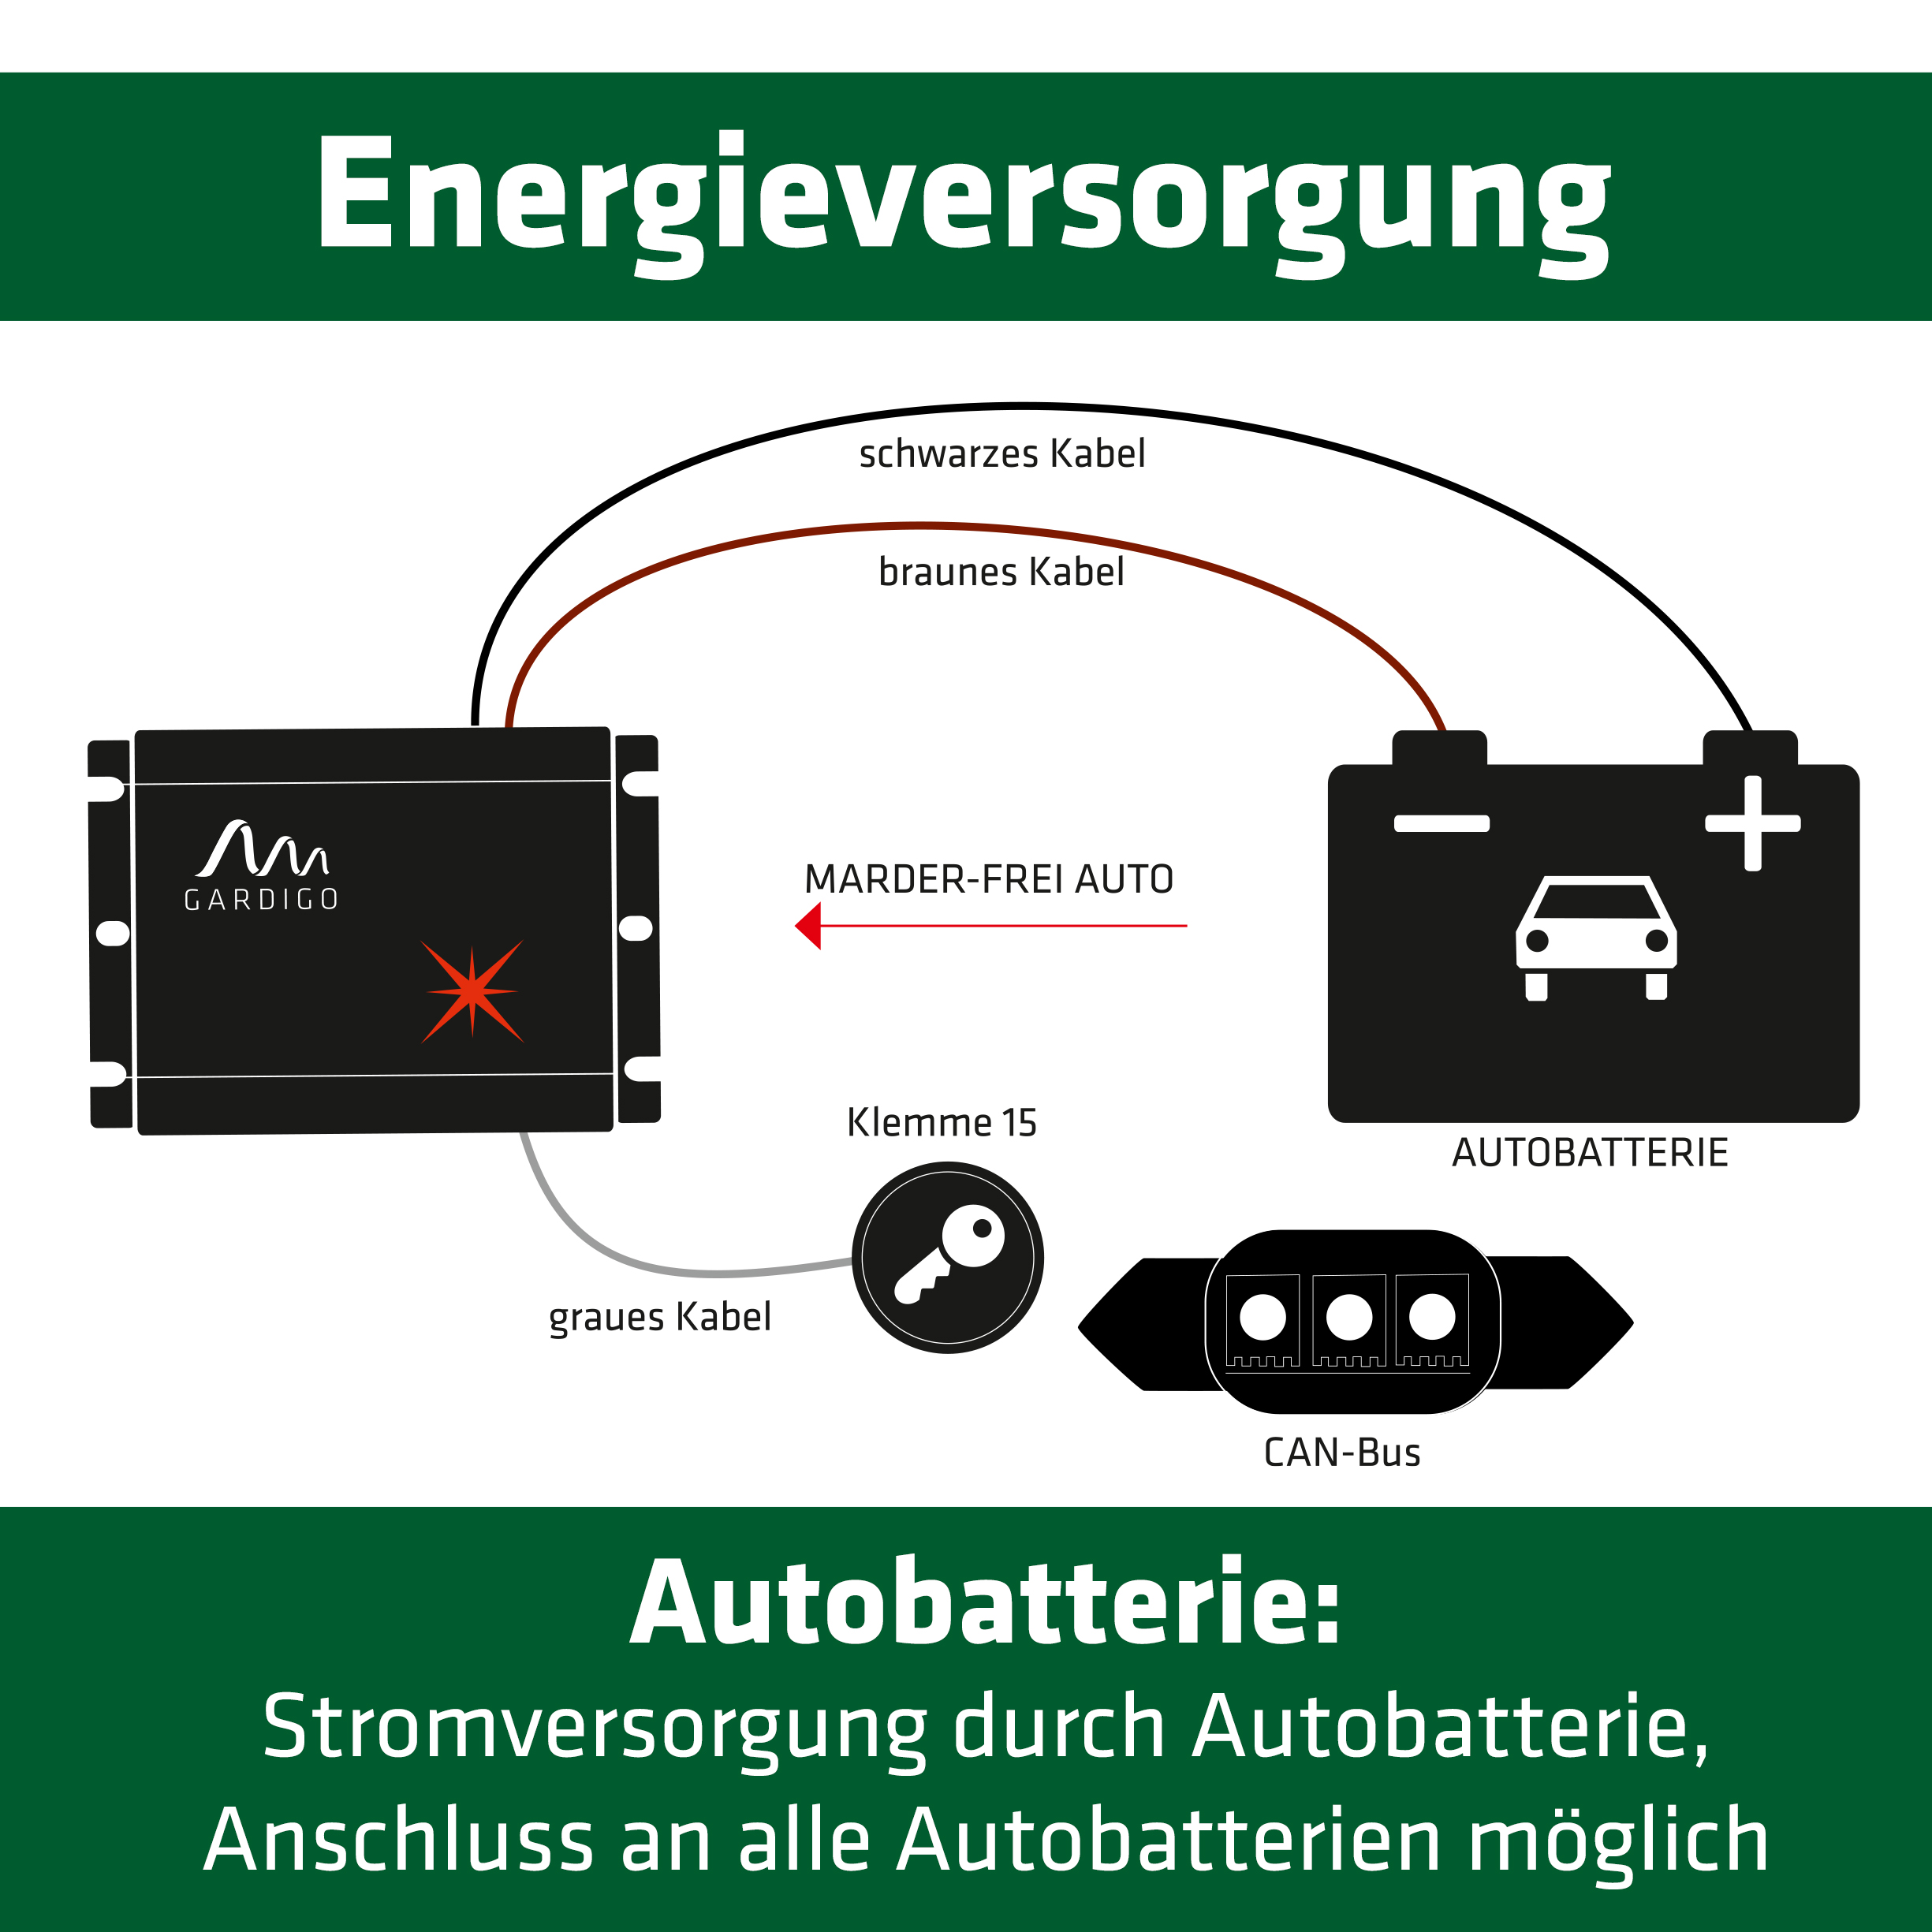 Marder-Frei Auto, Marderschreck für die Autobatterie